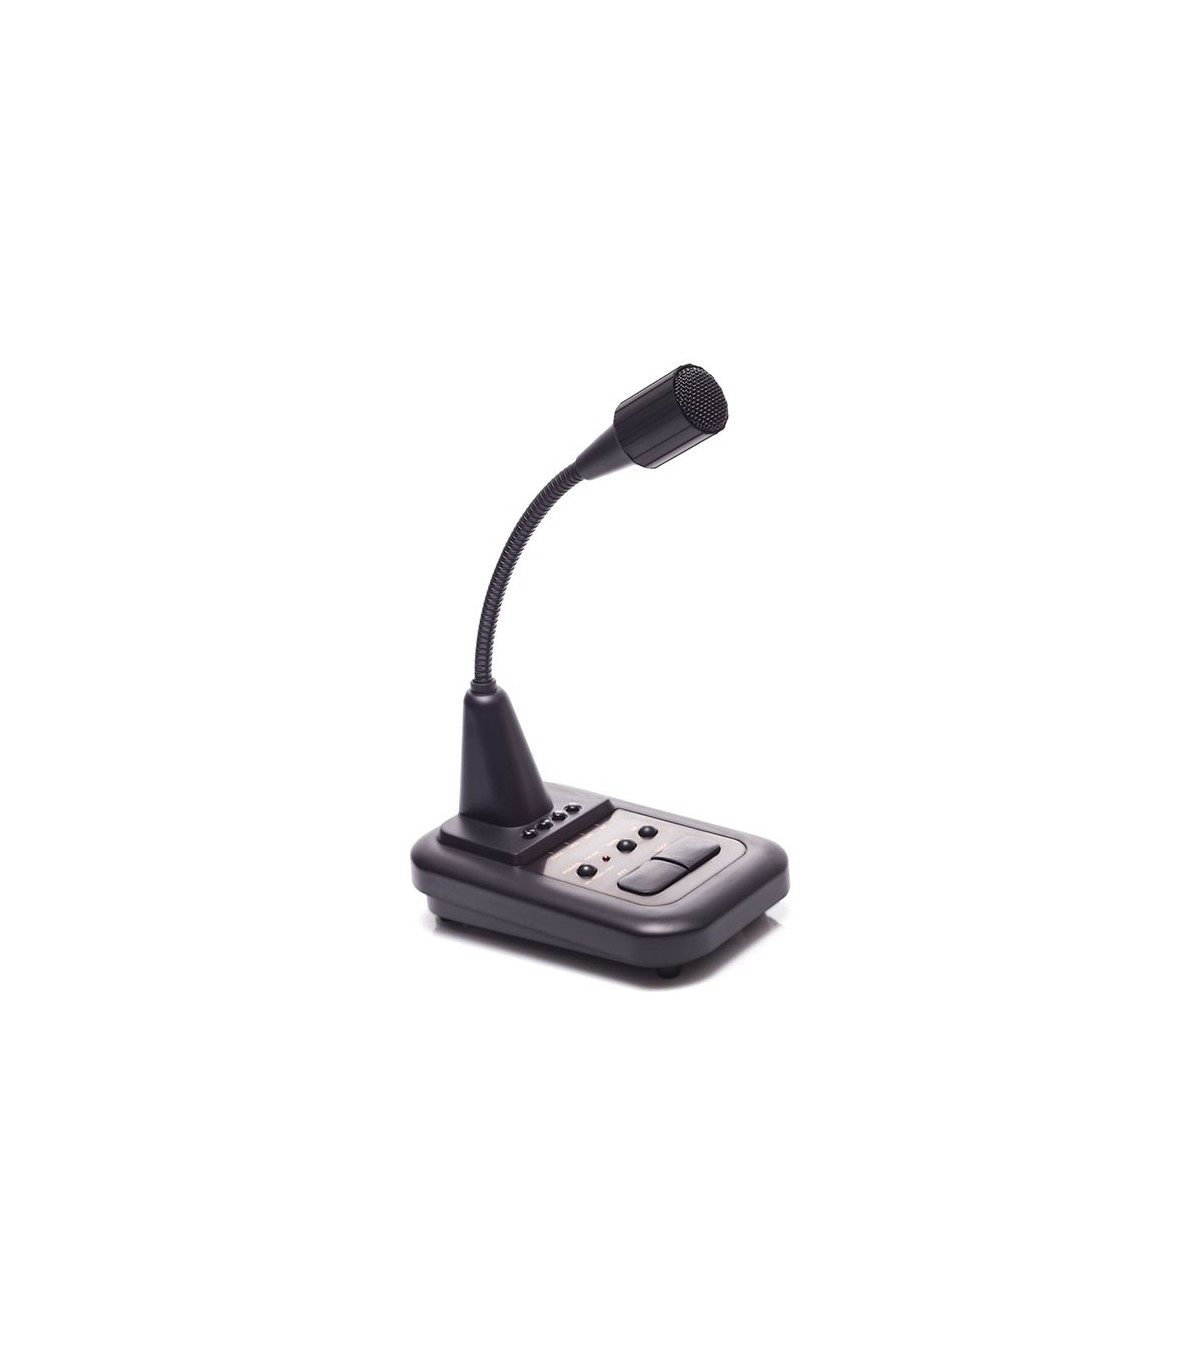 Desk Microphone For Vhf Uhf Av 508 Komunica Power Accessories